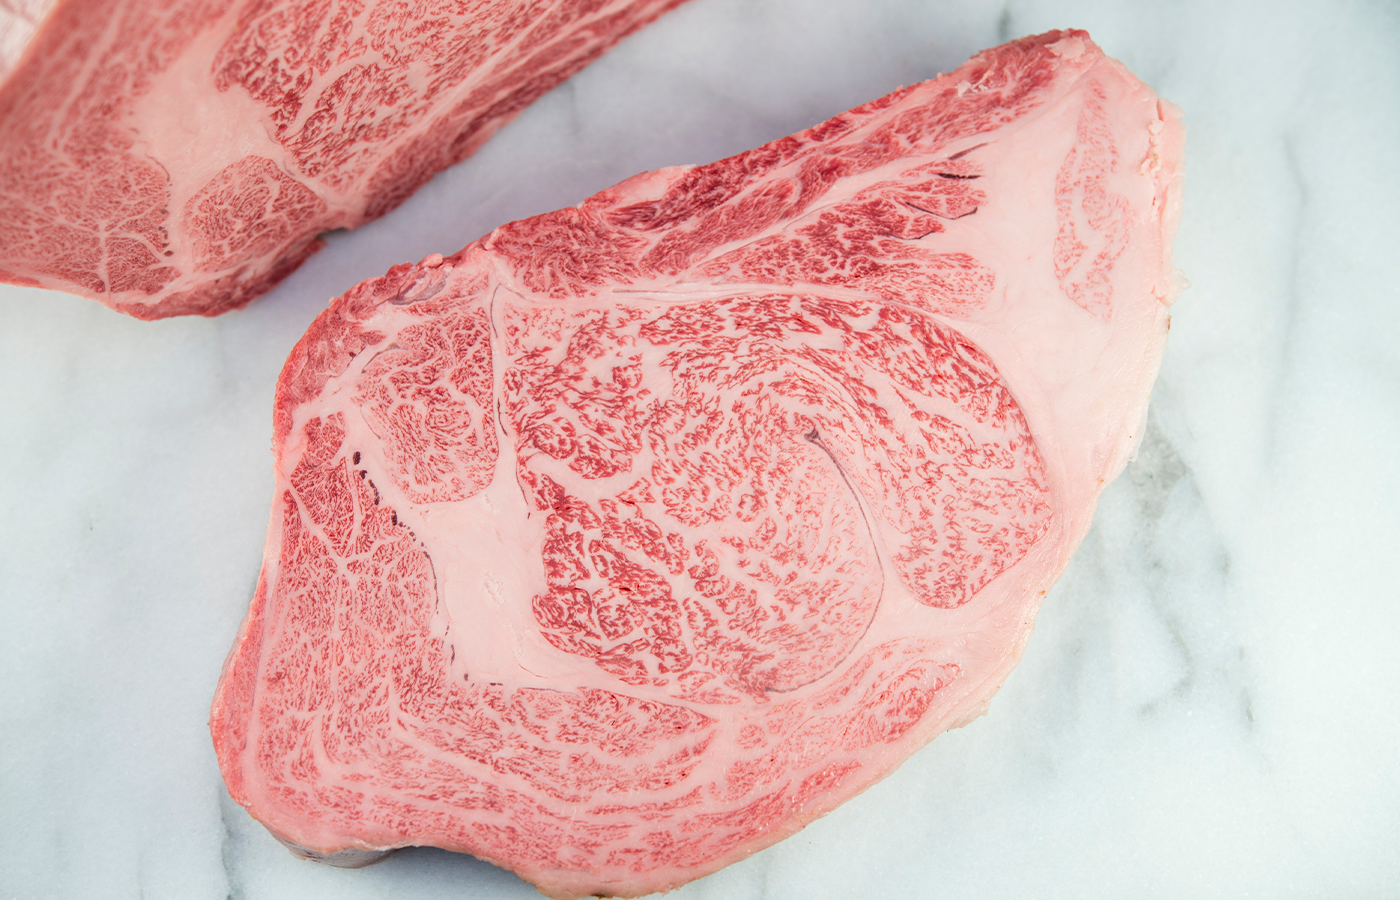 Miyazakigyu | A5 Wagyu Beef Ribeye Steak (Thick Cut)